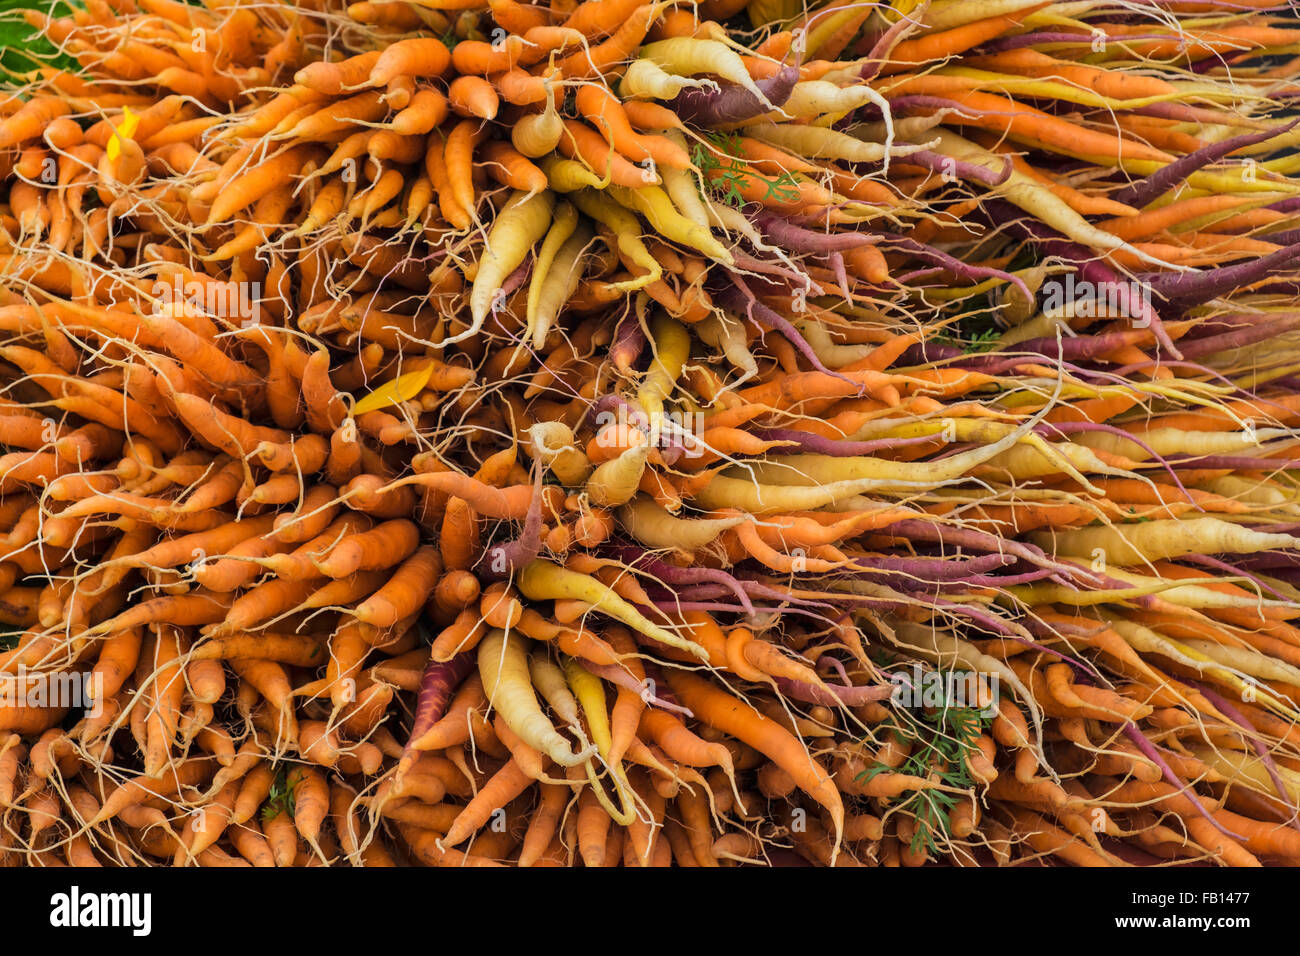 Grande grappolo di arancione, giallo e viola per le carote Foto Stock